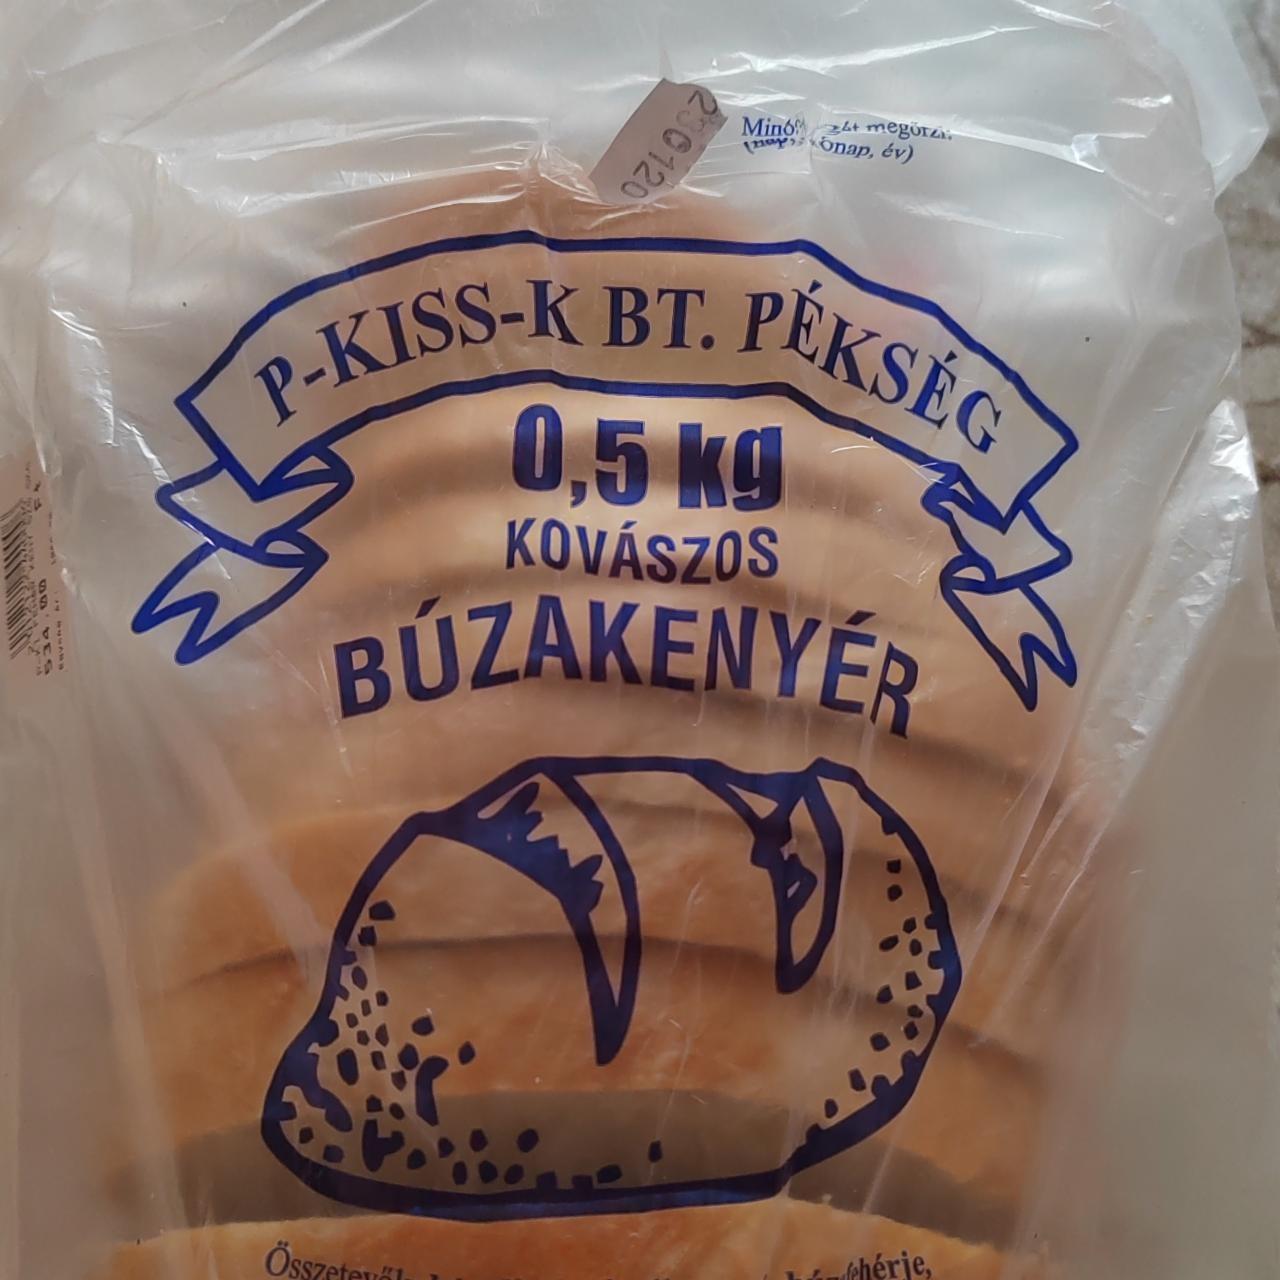 Képek - Kovászos búzakenyér P-Kiss-k bt. pékség